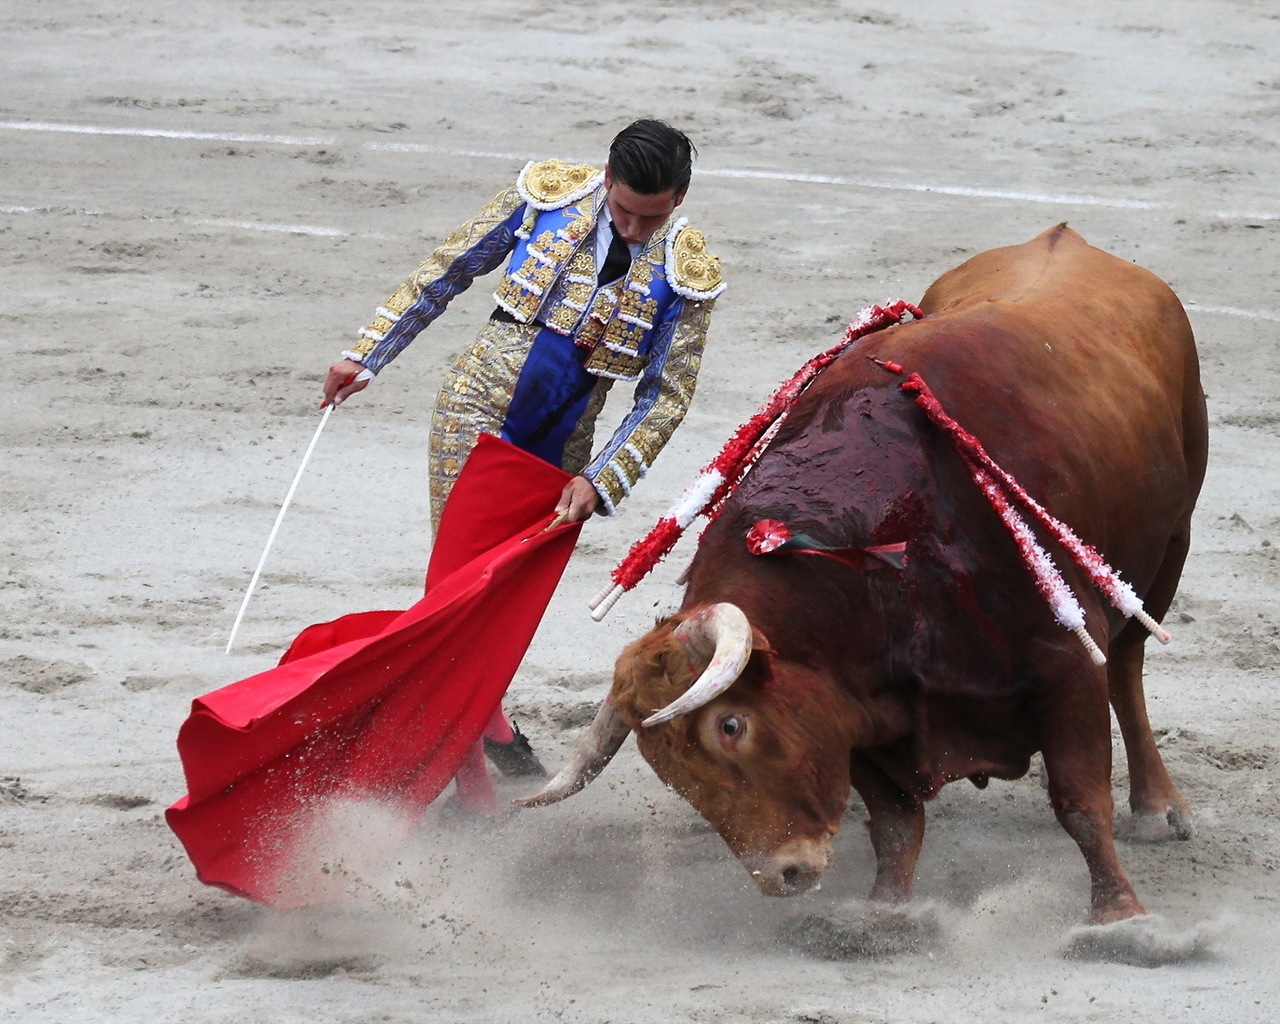 Matador Bullfight for 1280 x 1024 resolution